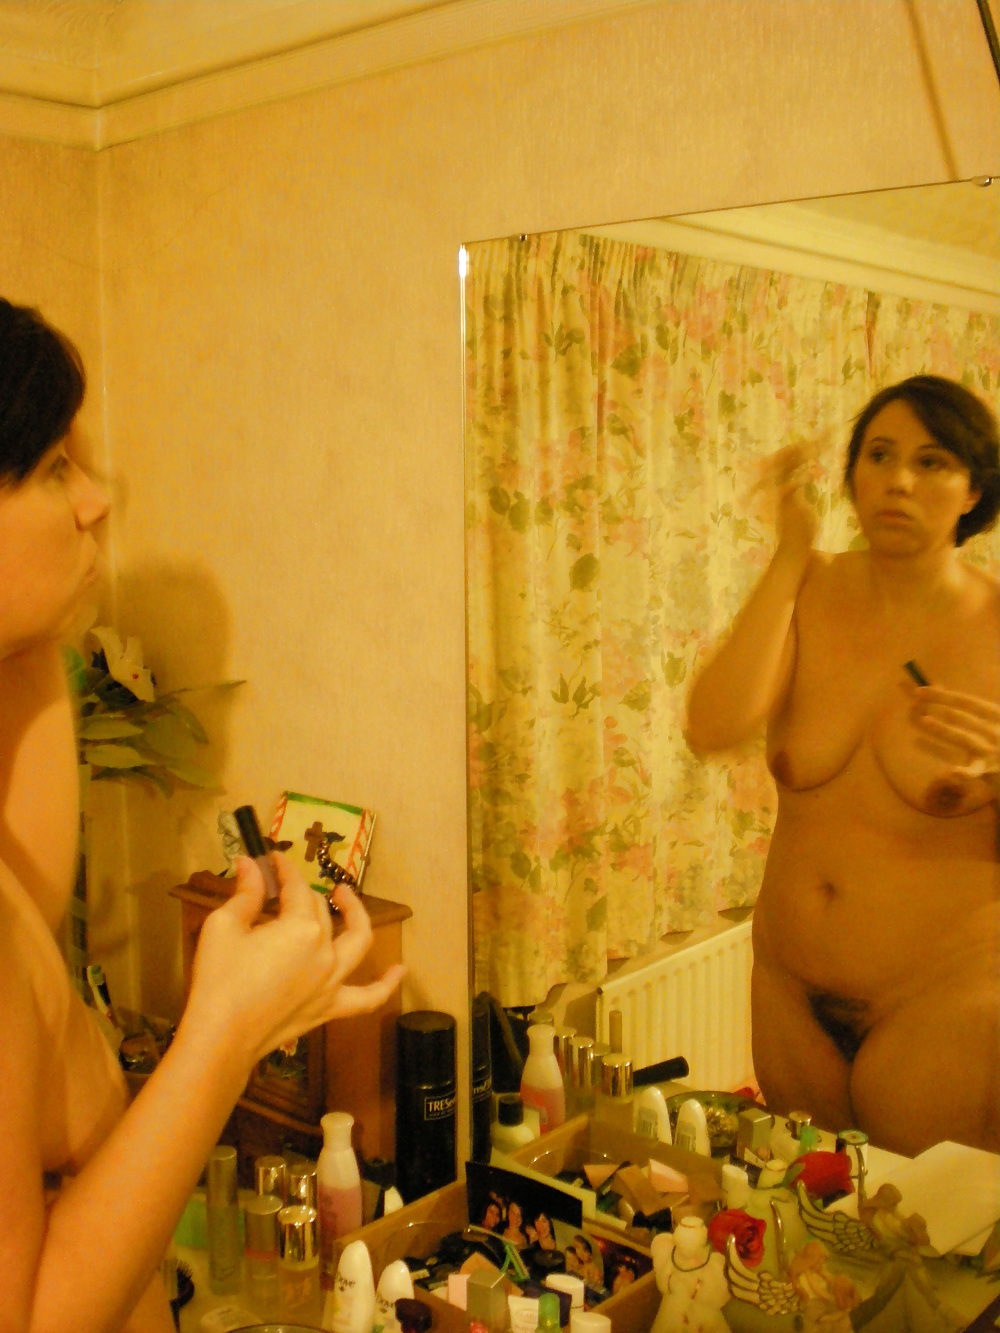 Il mio holly indossava nudo nello specchio
 #17075717